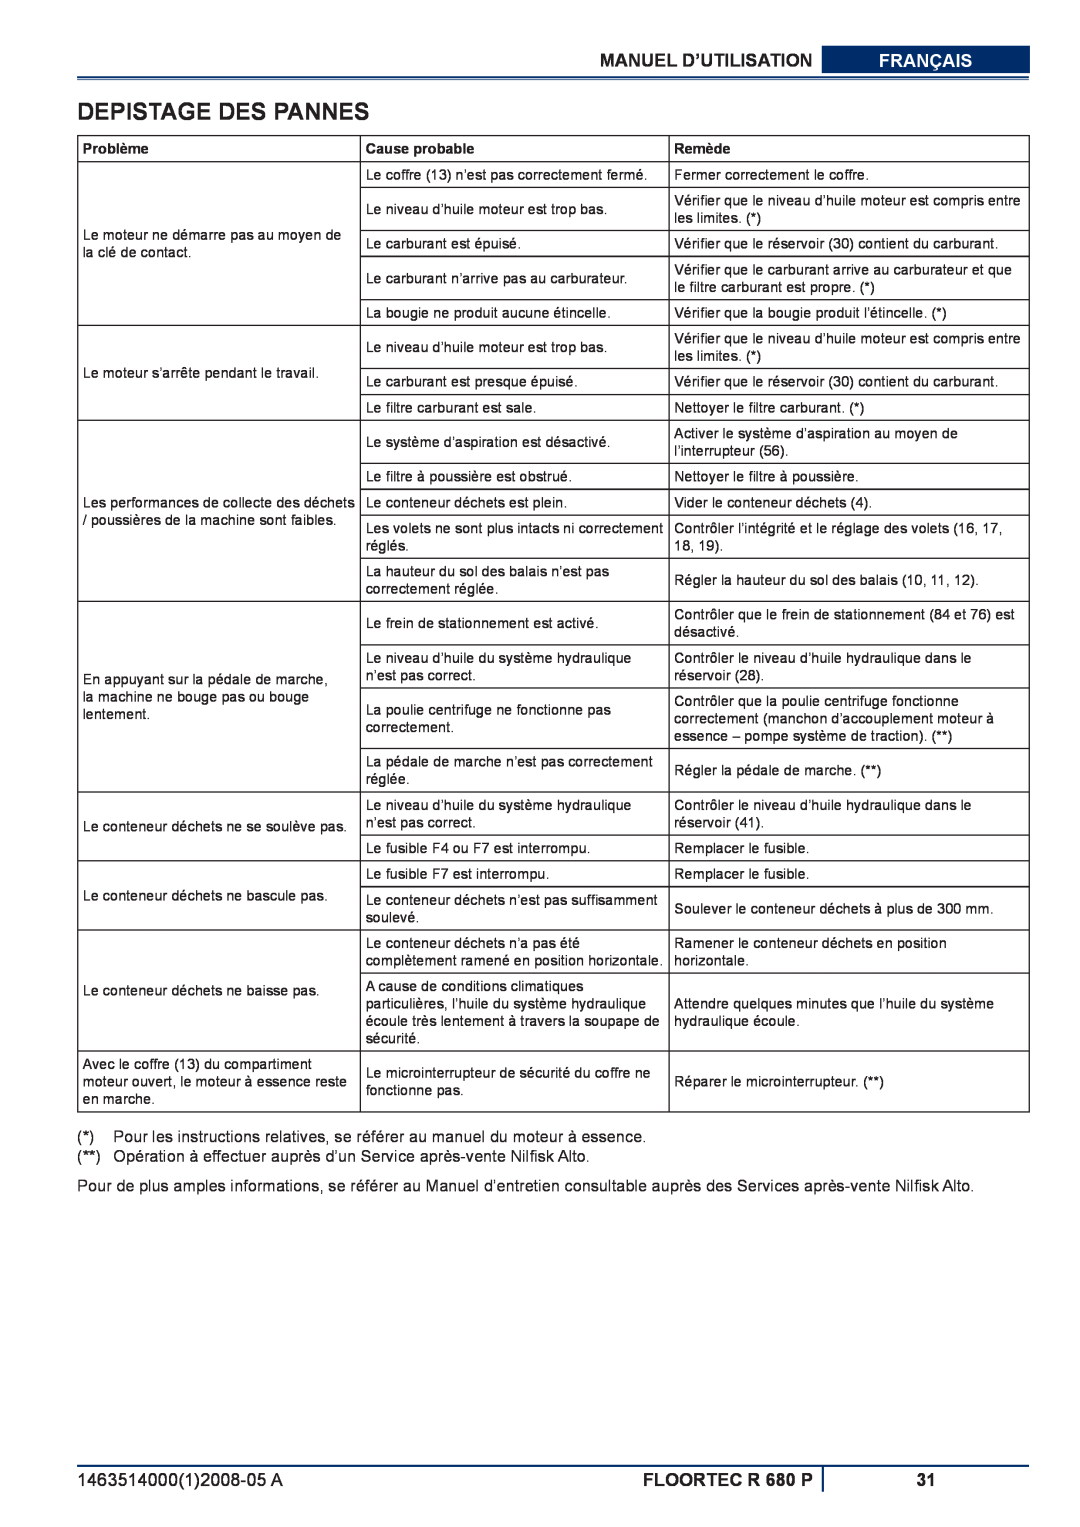 Nilfisk-ALTO Depistage Des Pannes, Manuel D’Utilisation, Français, FLOORTEC R 680 P, Problème, Cause probable, Remède 